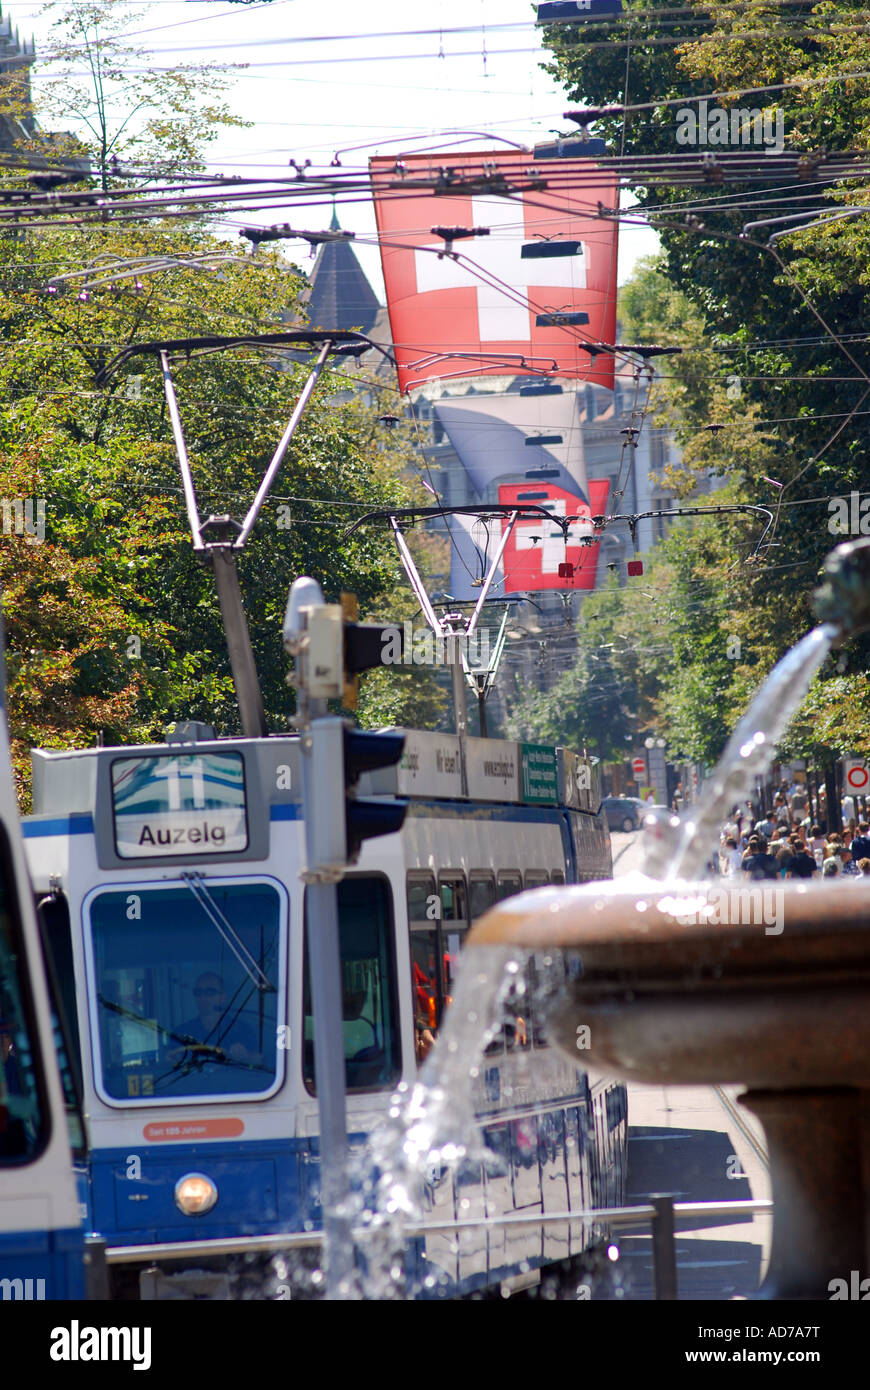 La ville de Zurich Suisse Bahnhofstrasse tram Banque D'Images